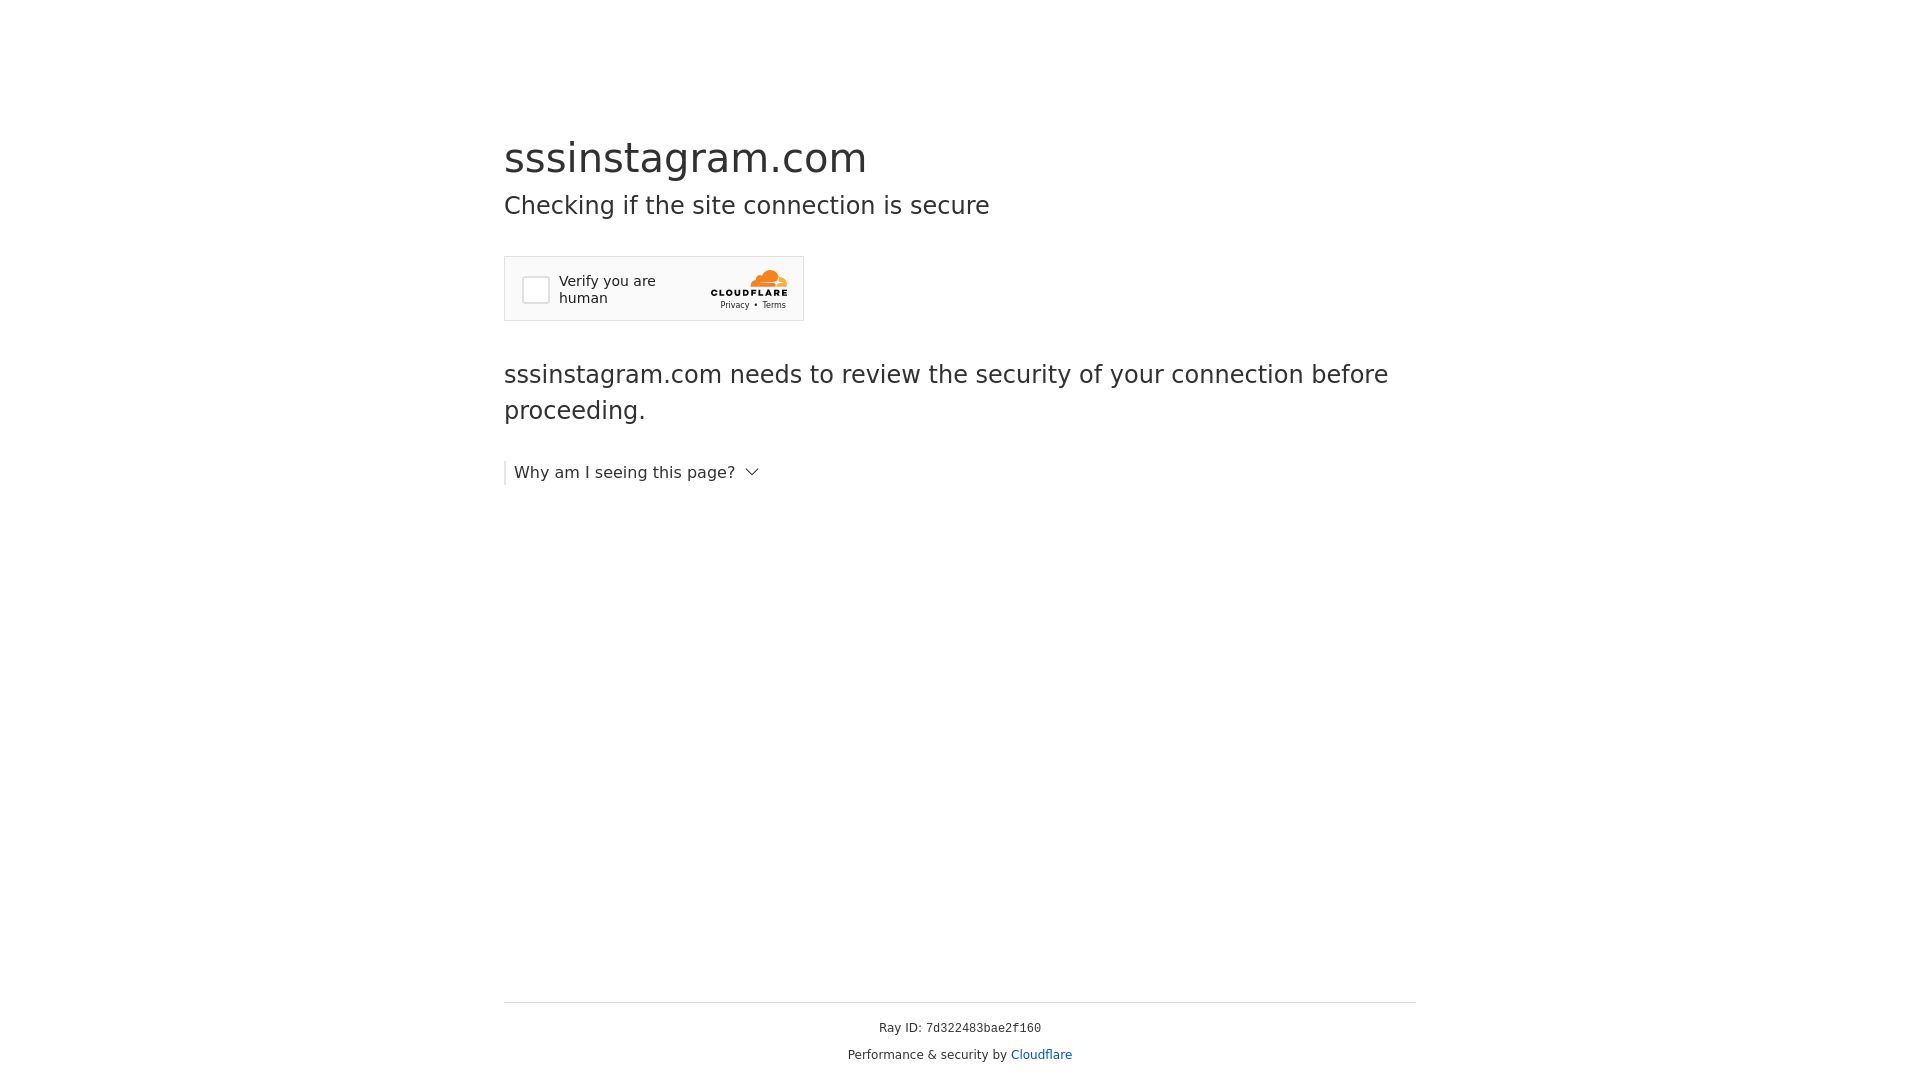 Website status sssinstagram.com is   ONLINE